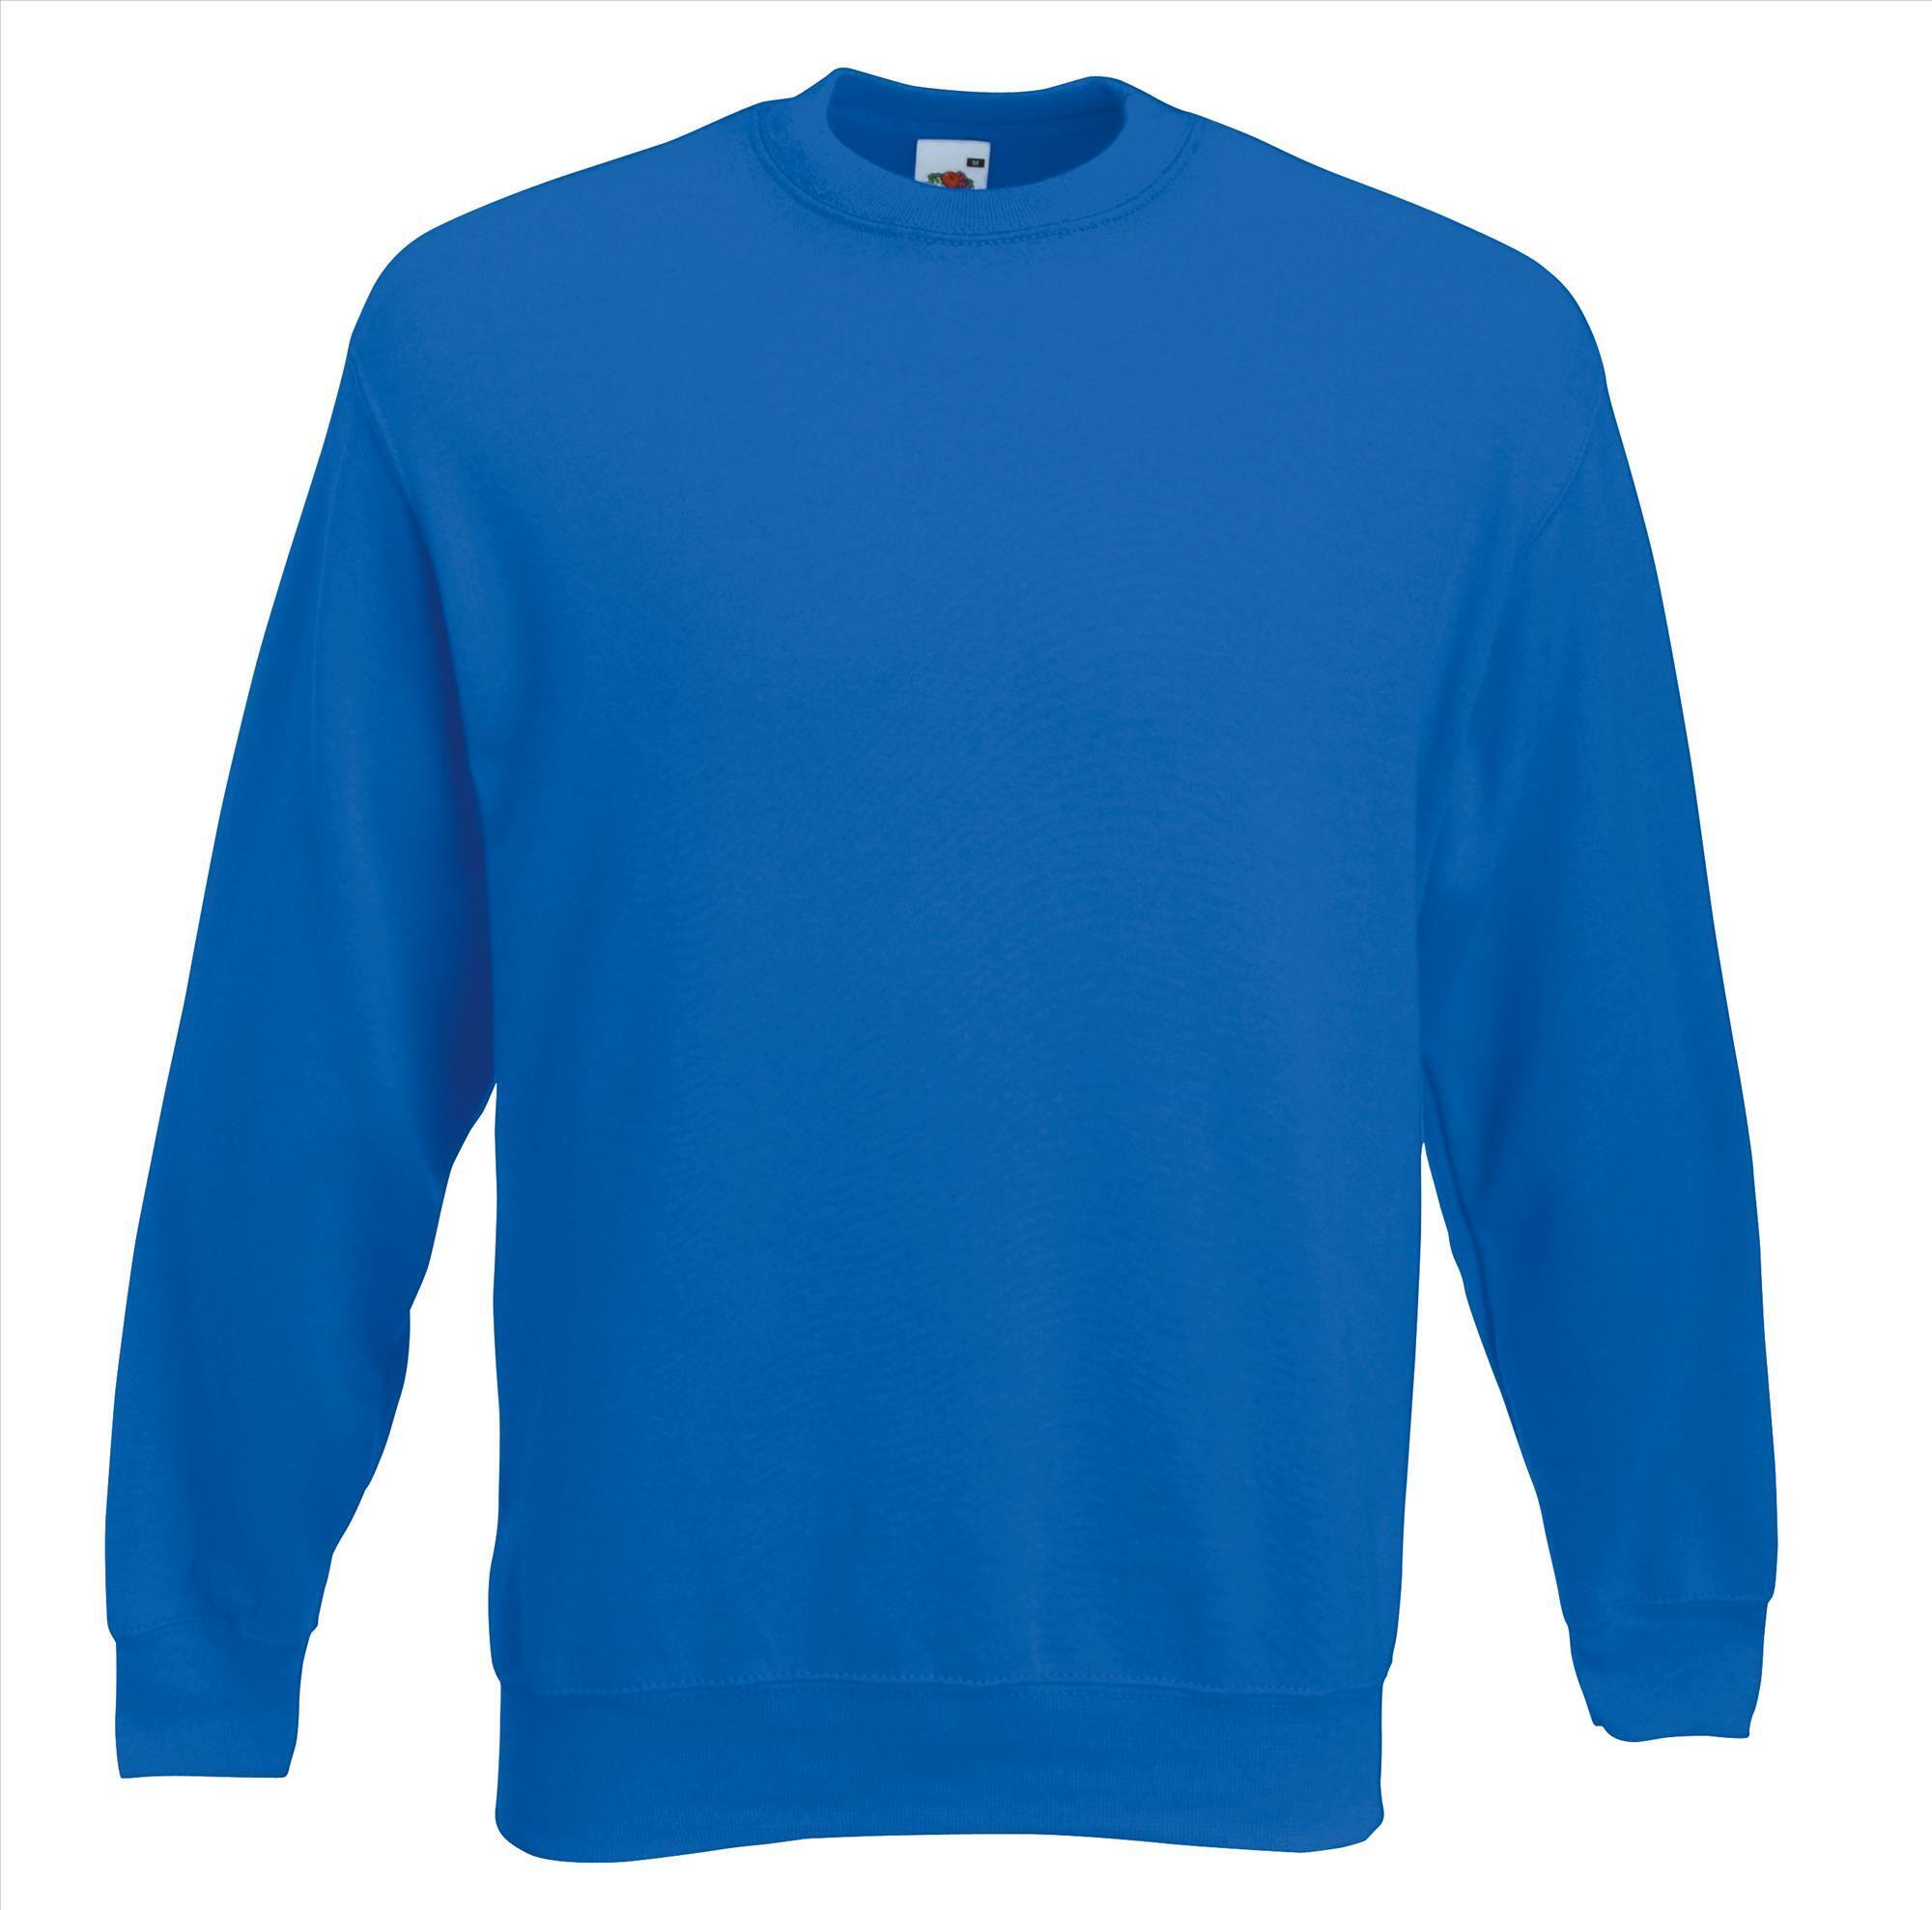 Royal blue blauwe trui sweater klassieke uitvoering unisex